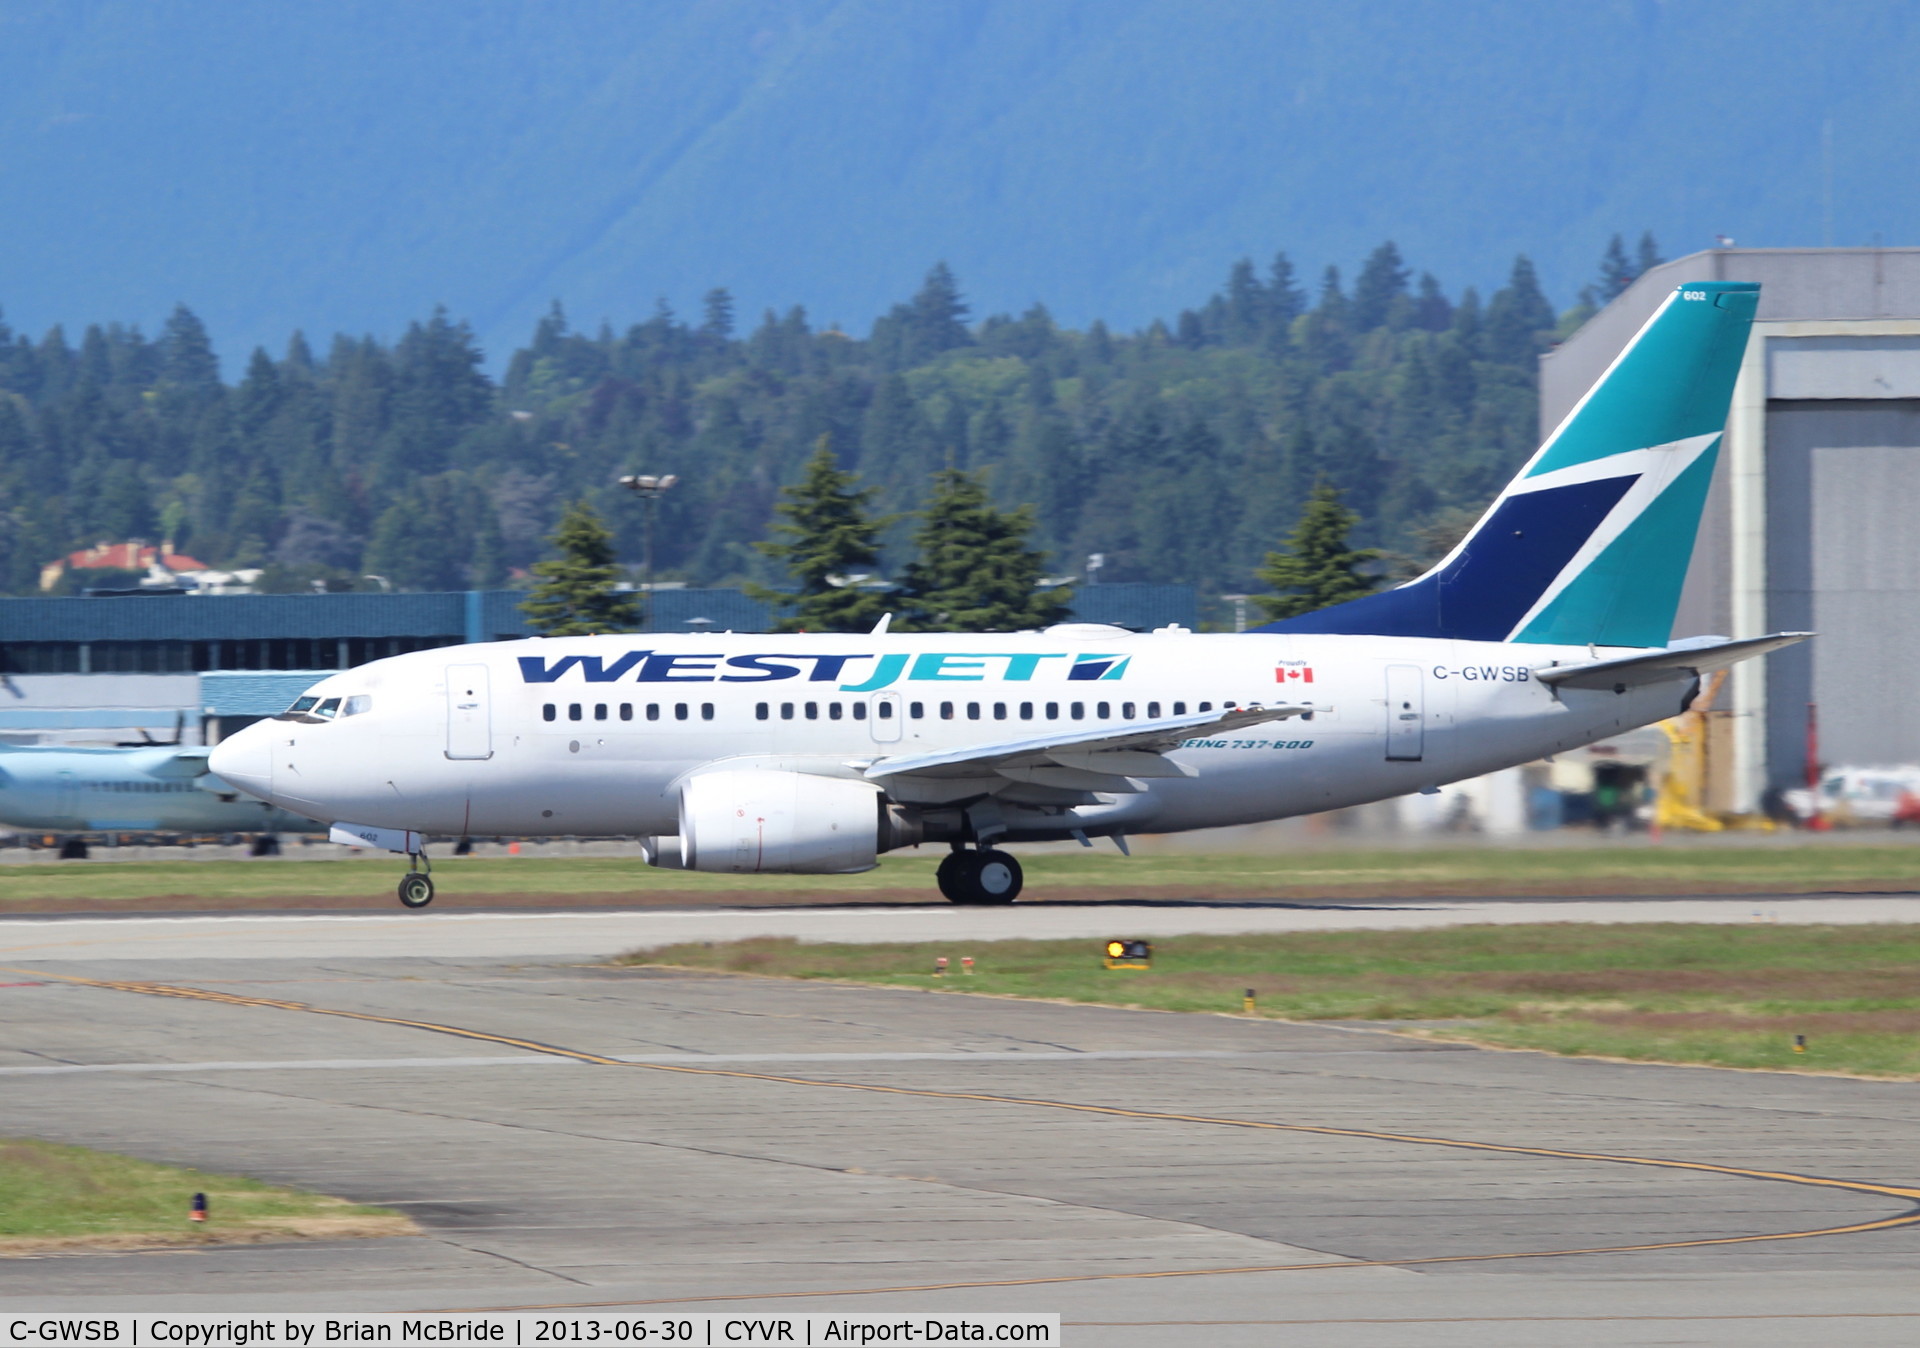 C-GWSB, 2005 Boeing 737-6CT C/N 34285, WestJet. 737-6CT. C-GWSB 602 cn 34285 1797. Vancouver - International (YVR CYVR). Image © Brian McBride. 30 June 2013